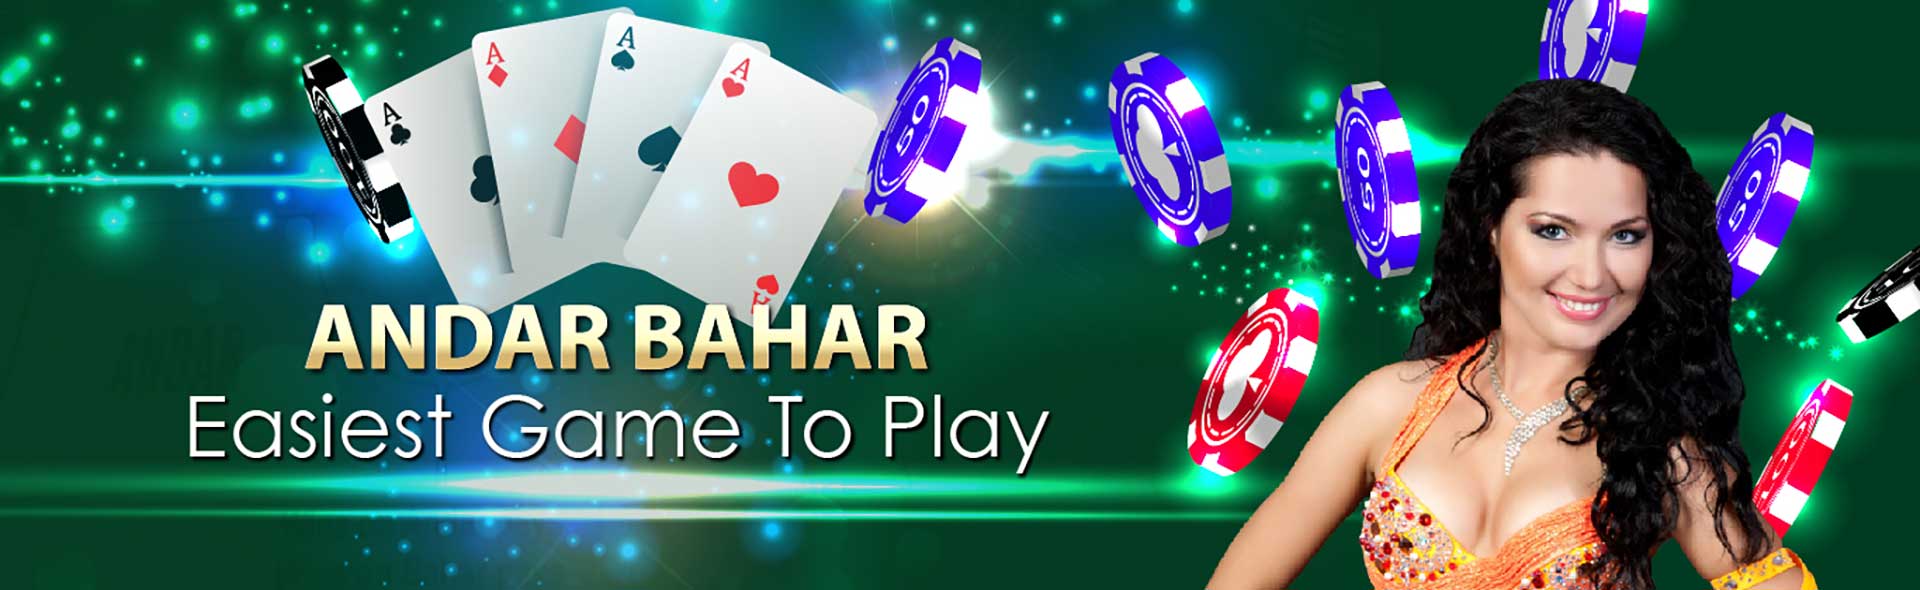 Andhar Bahar Online Game